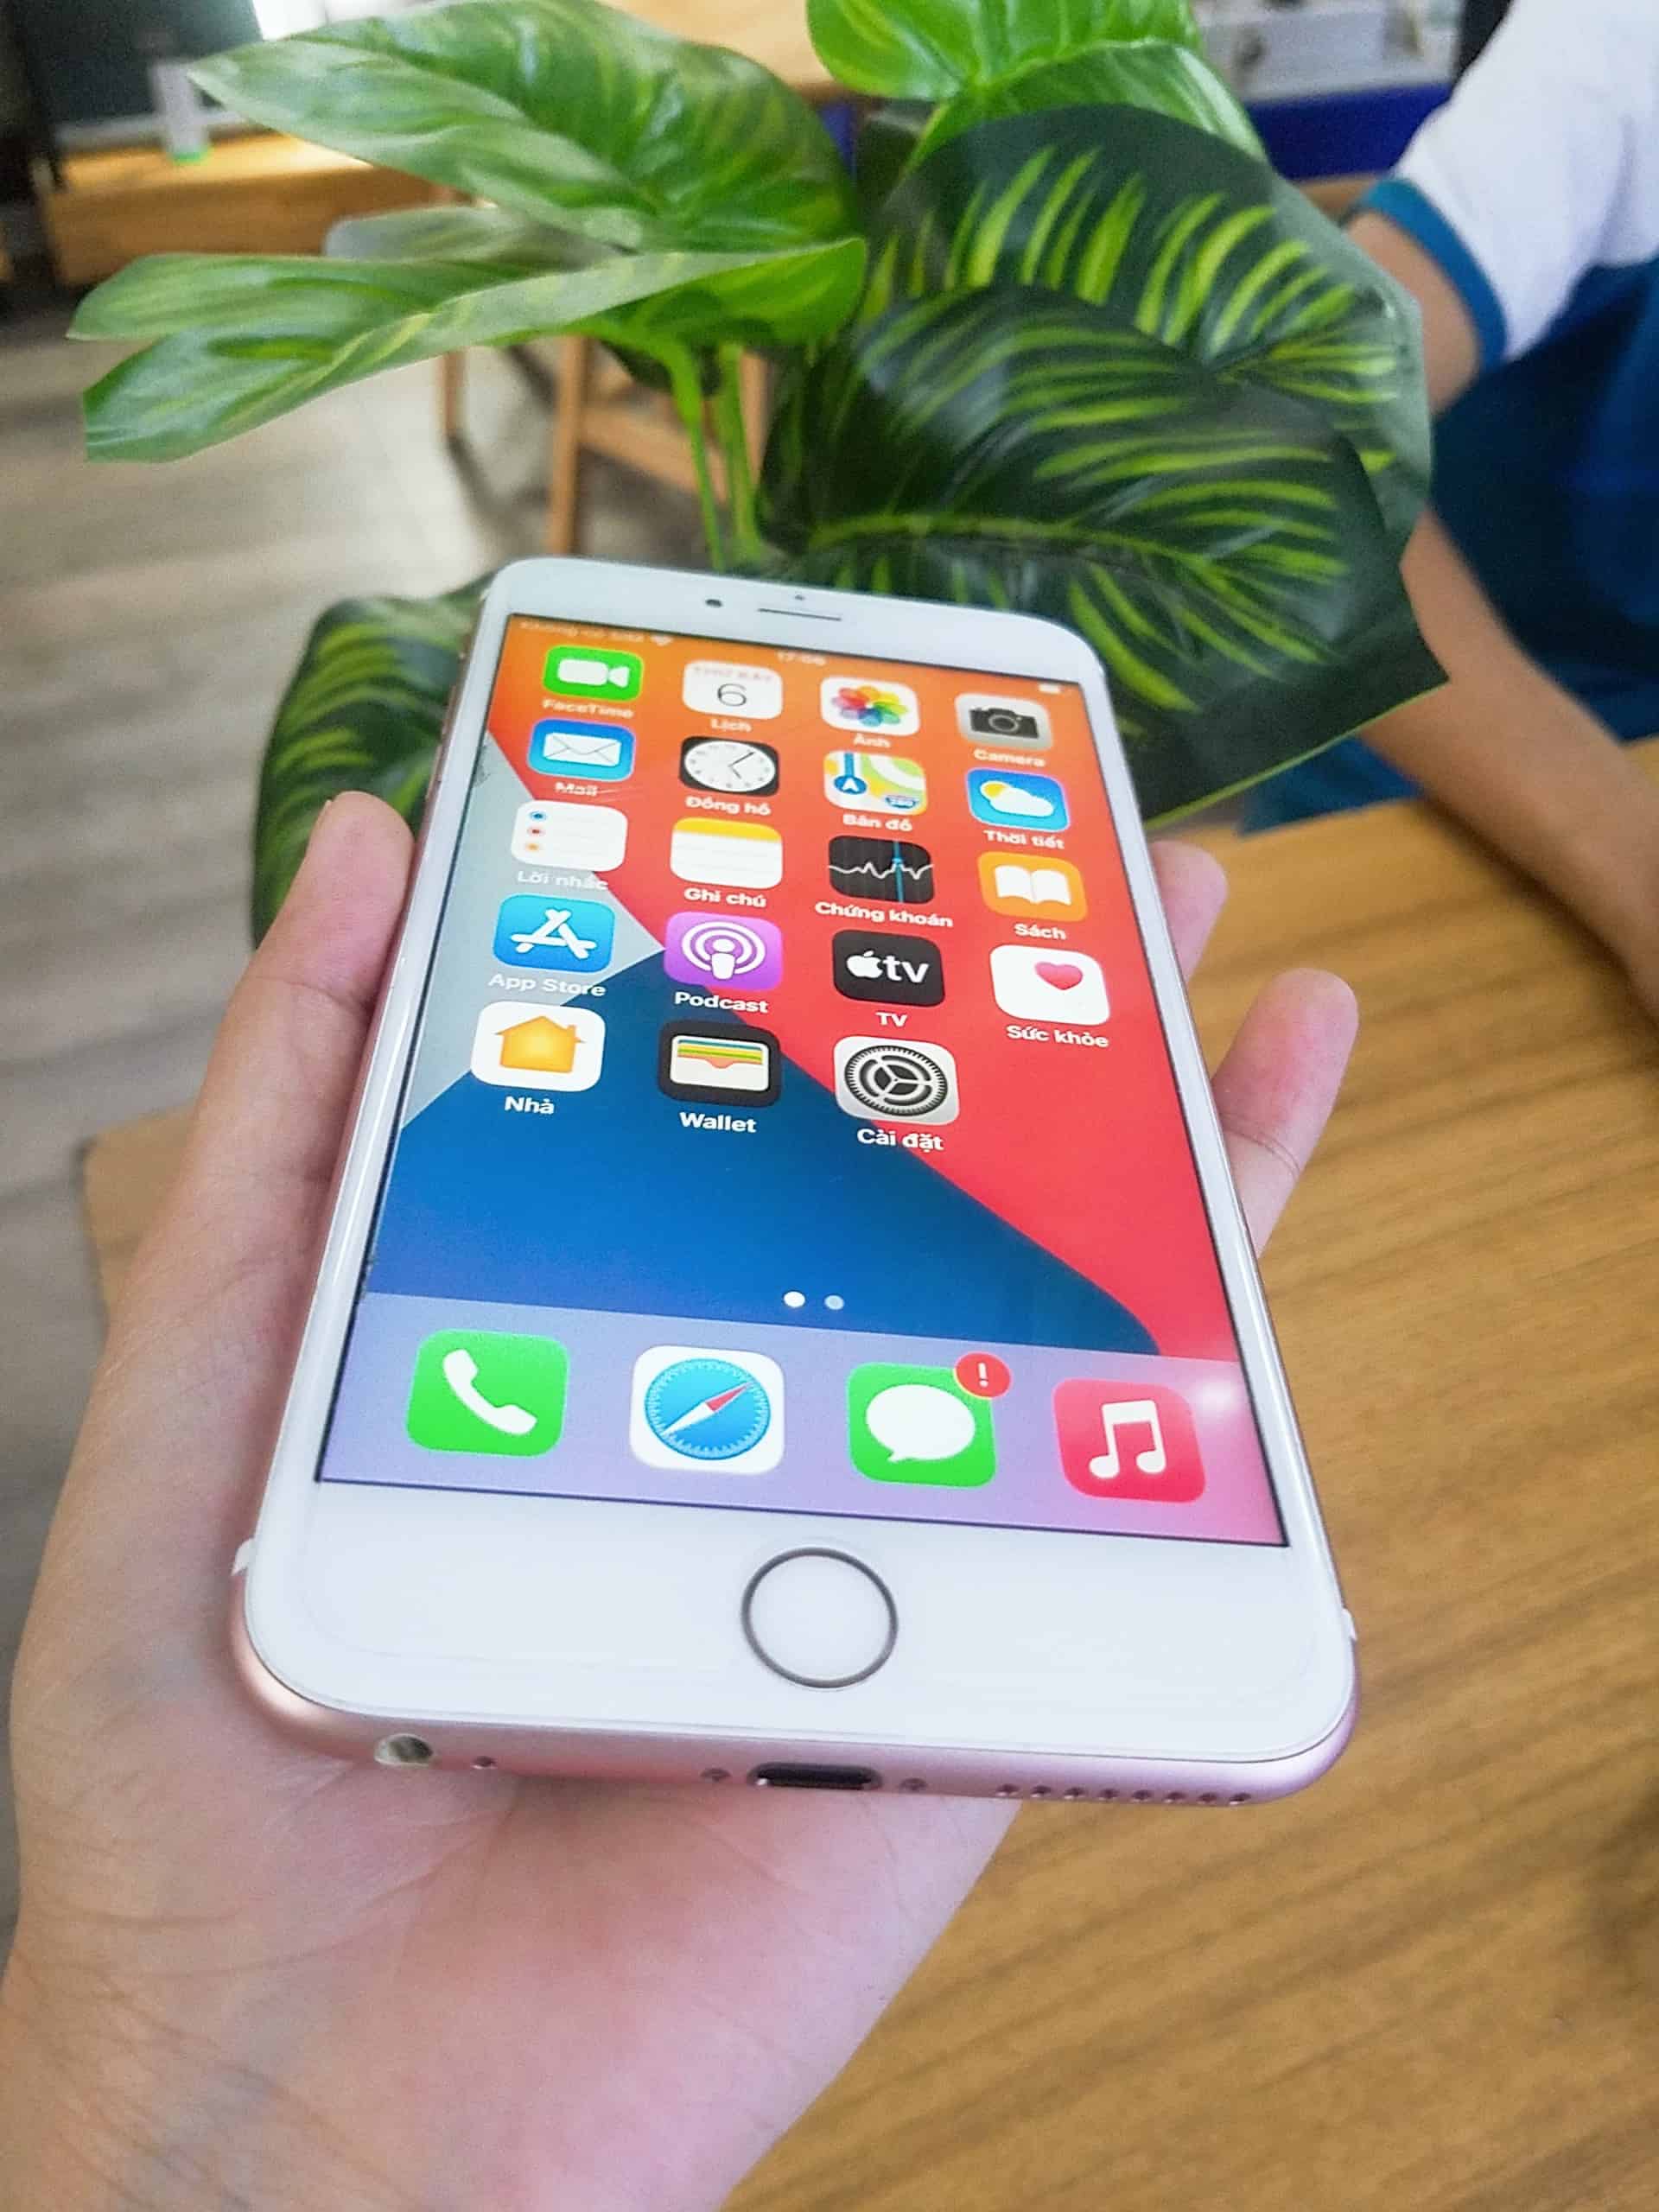 Cần bán iPhone 6s Plus màu hồng cũ nguyên zin likenew 99%